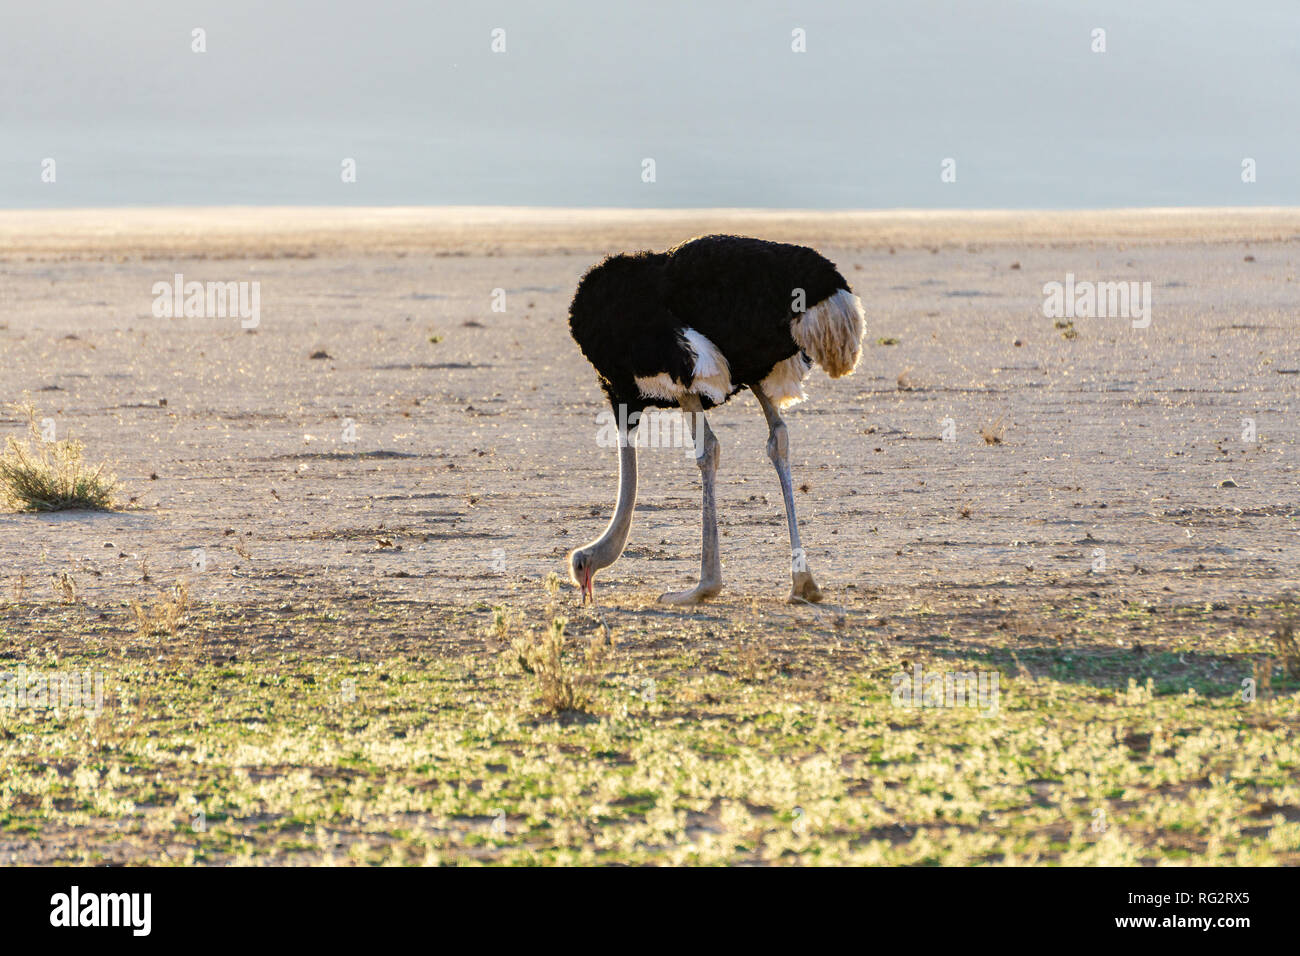 Erschrocken Strauß vergräbt ihren Kopf in Sand Konzept Abenteuer Stockfoto